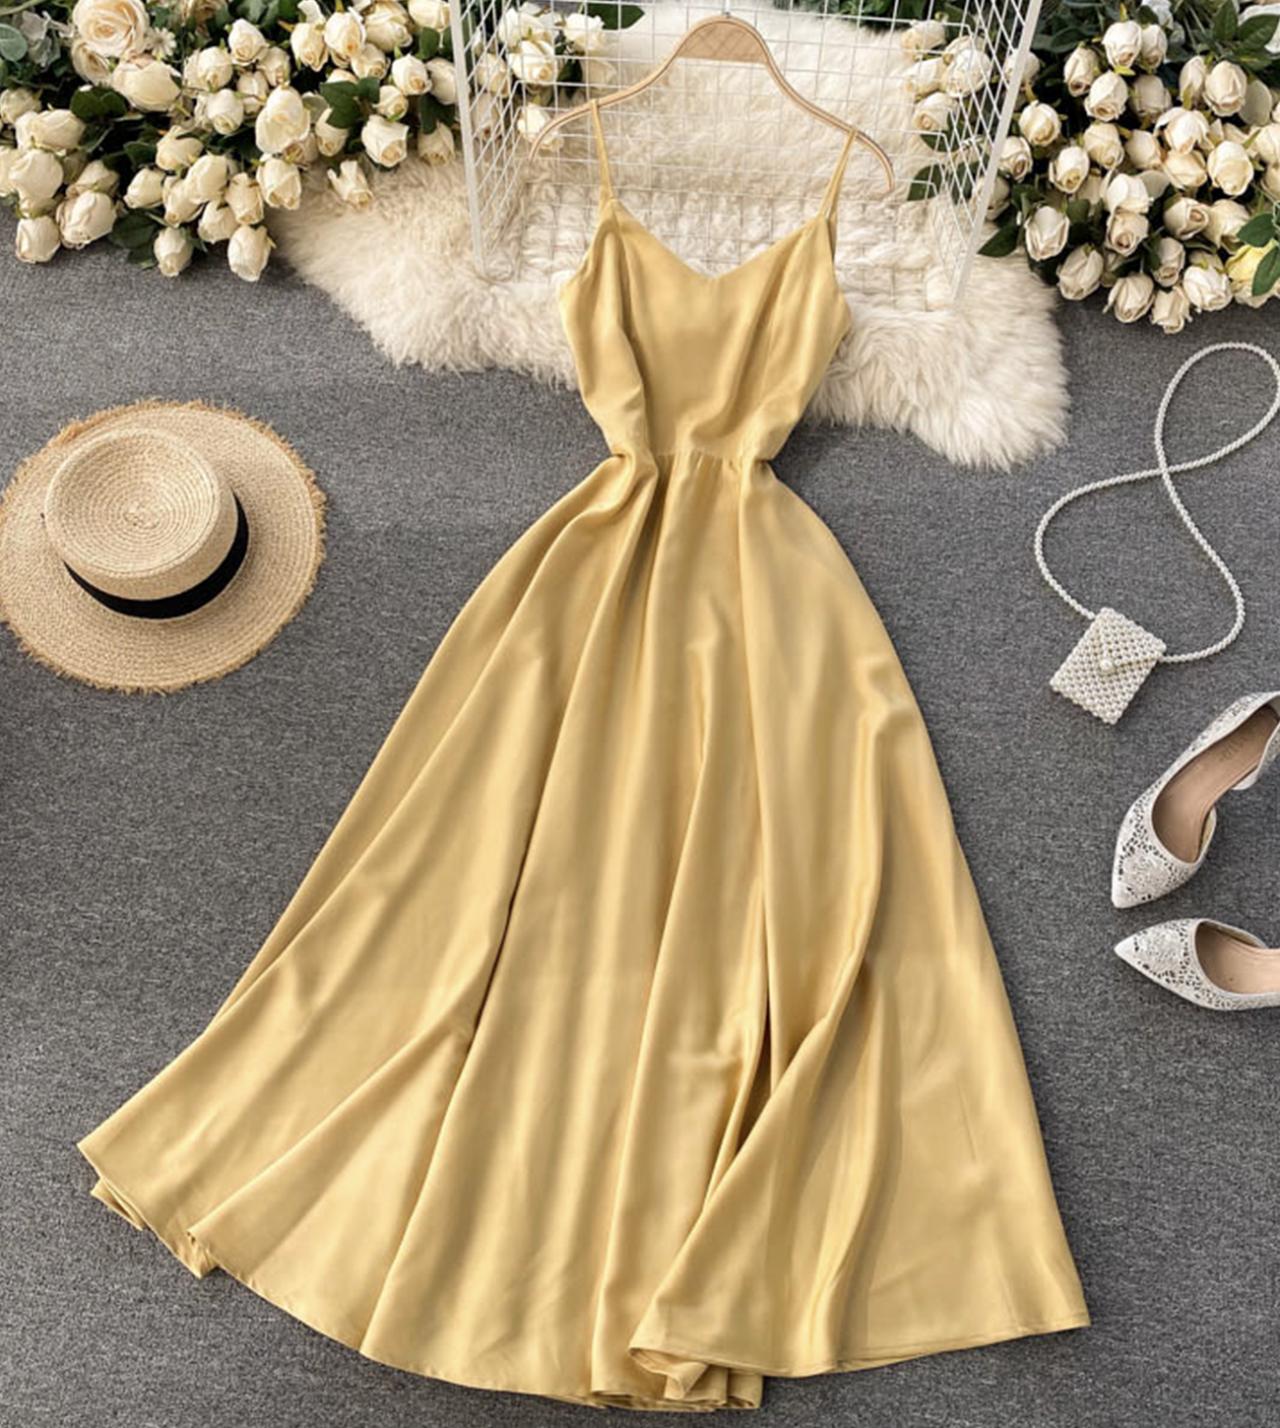 Süßes Satinkleid mit V-Ausschnitt, modisches Kleid 799 